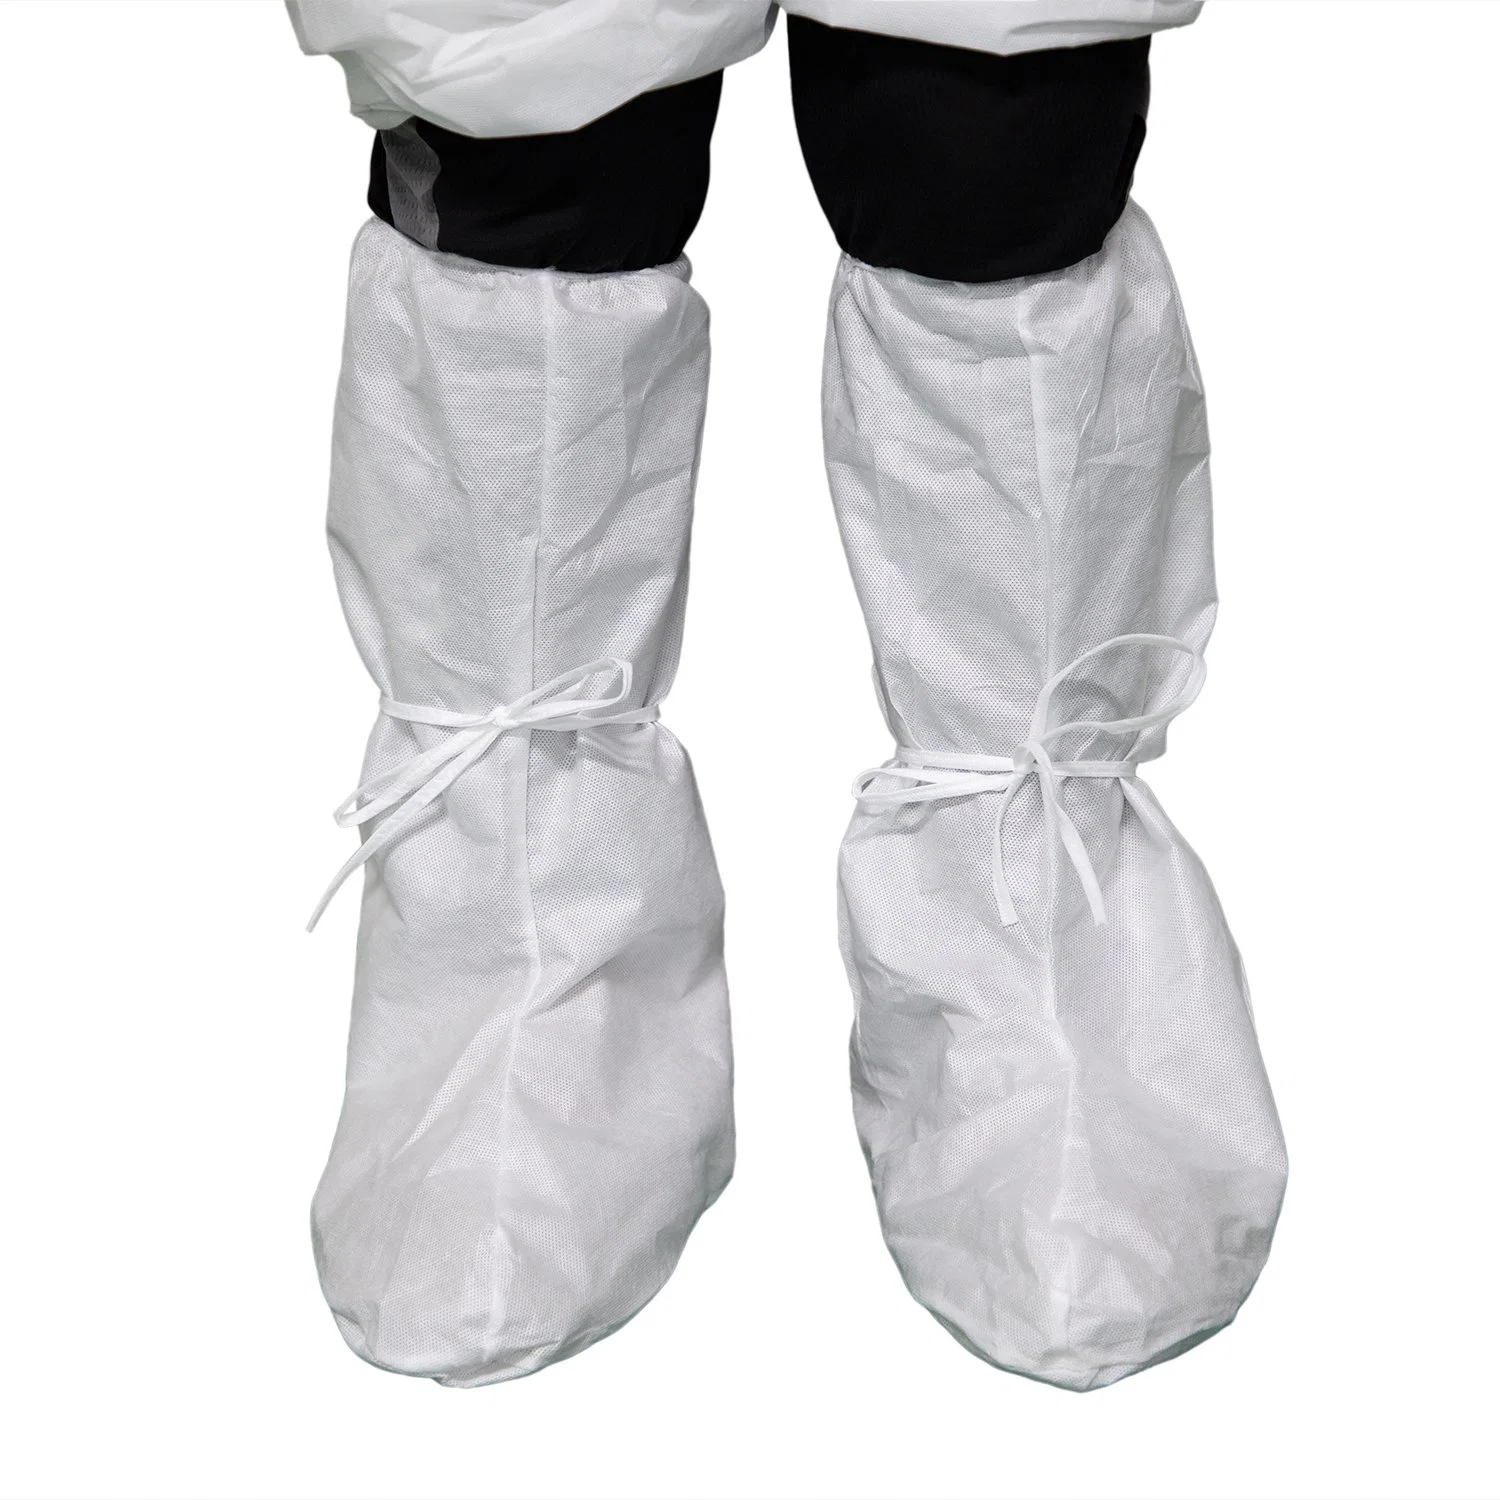 حذاء بلاستيكي قابل للاستخدام مرة واحدة، مقاوم للماء ومنخفض السعر، ومضاد للانزلاق PE باللون الأزرق غطاء غطاء غطاء الواقي من الثلج القابل للاستخدام مرة واحدة مضاد للكيمياويات للماء غير القابل للتفرد